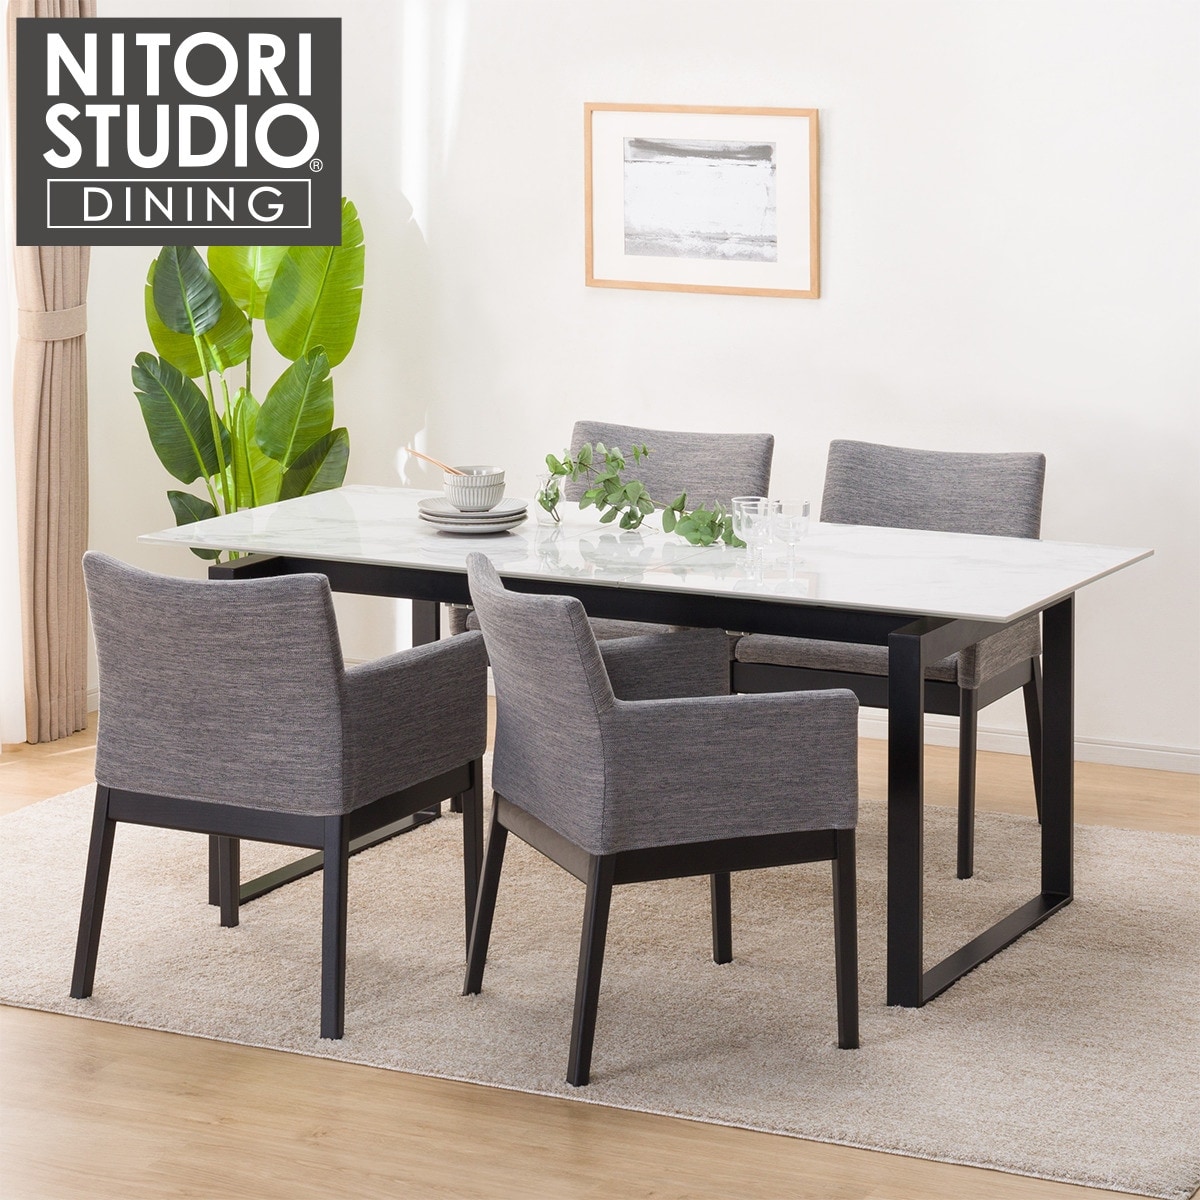 テーブル と 椅子 | ニトリネット【公式】 家具・インテリア通販